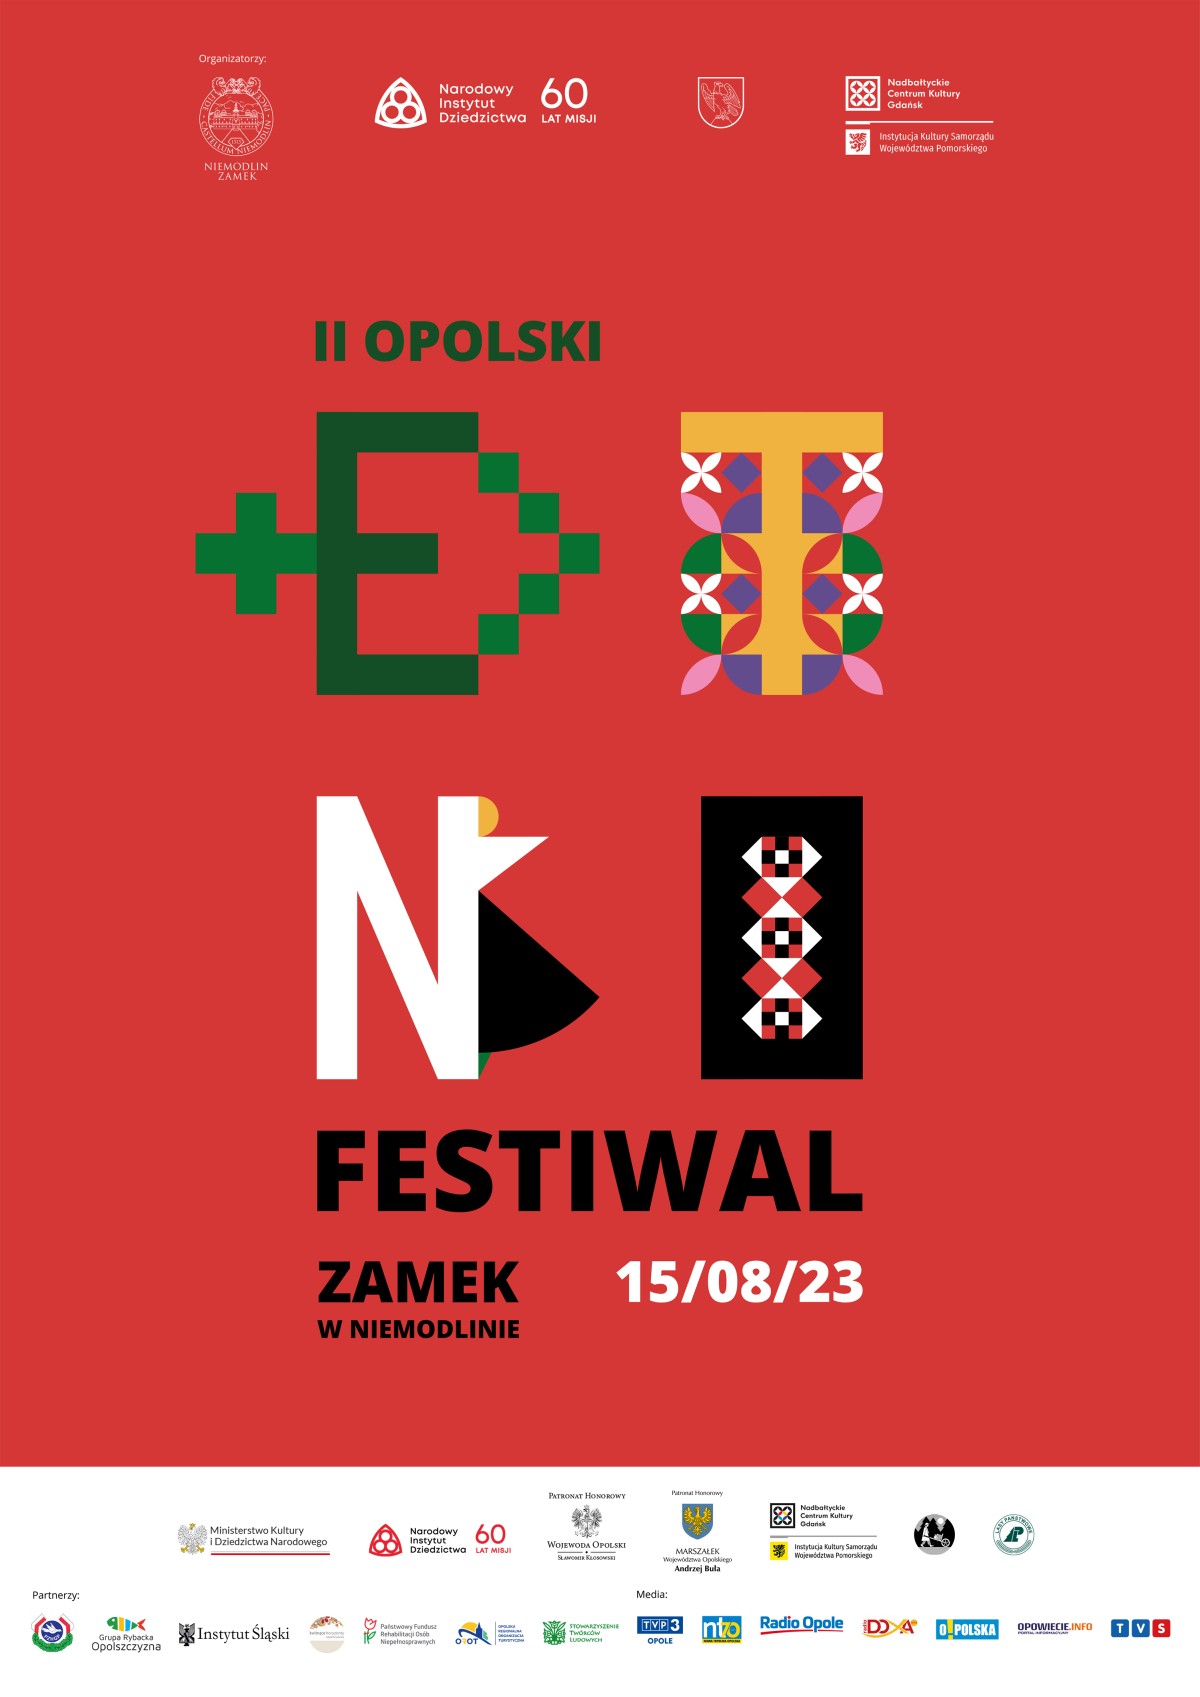 Już 15 sierpnia odbędzie się II Opolski Etnofestiwal w Niemodlinie